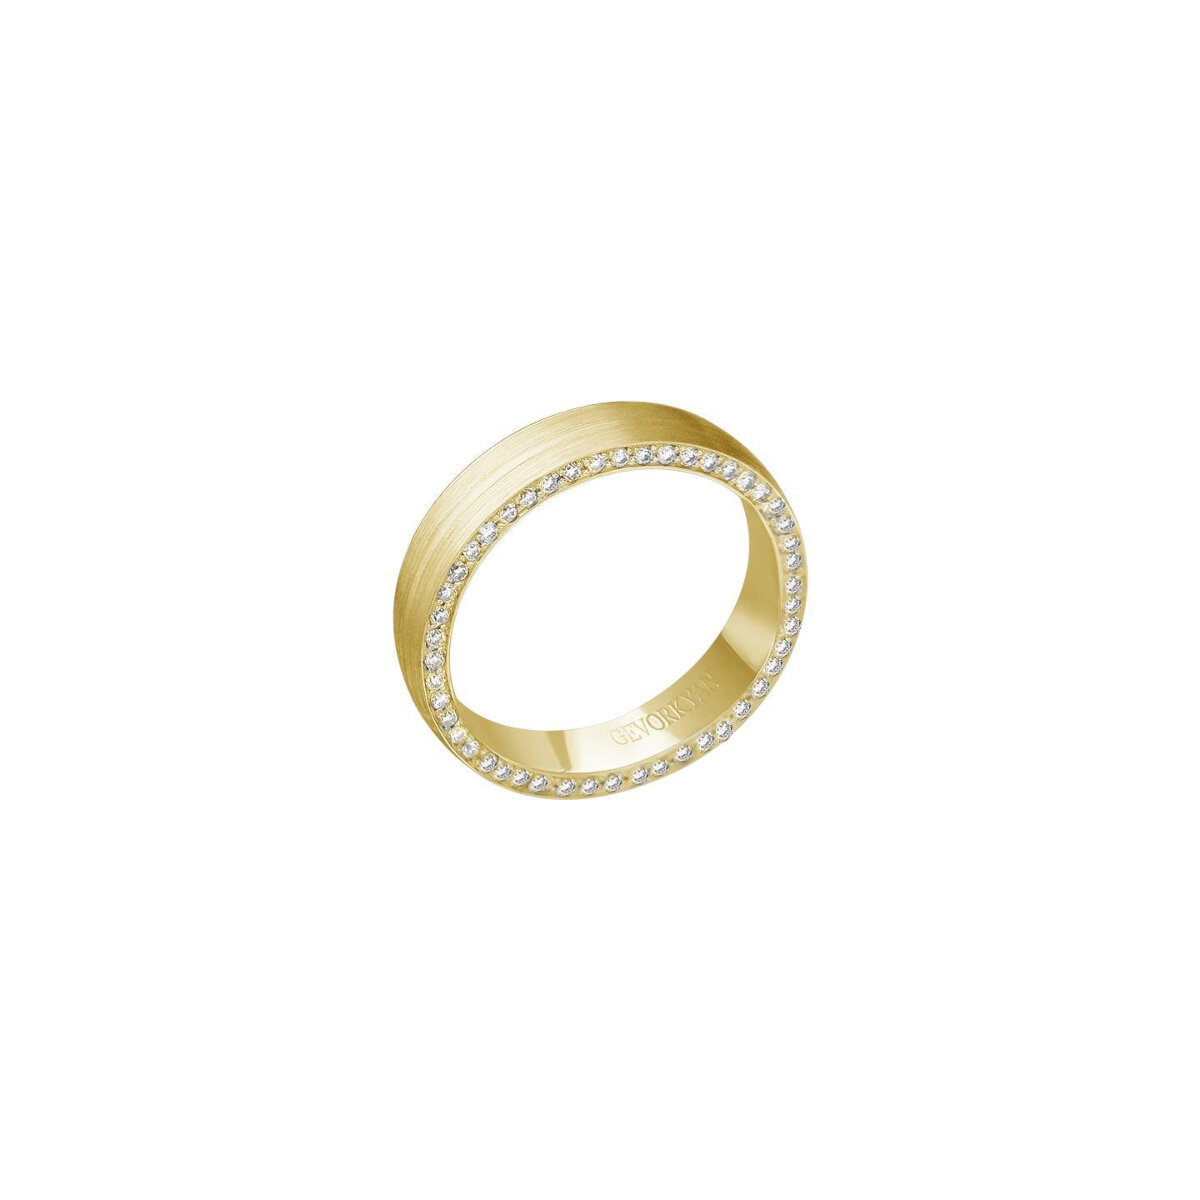 Кольцо обручальное Эстет, желтое золото, 585 проба, бриллиант